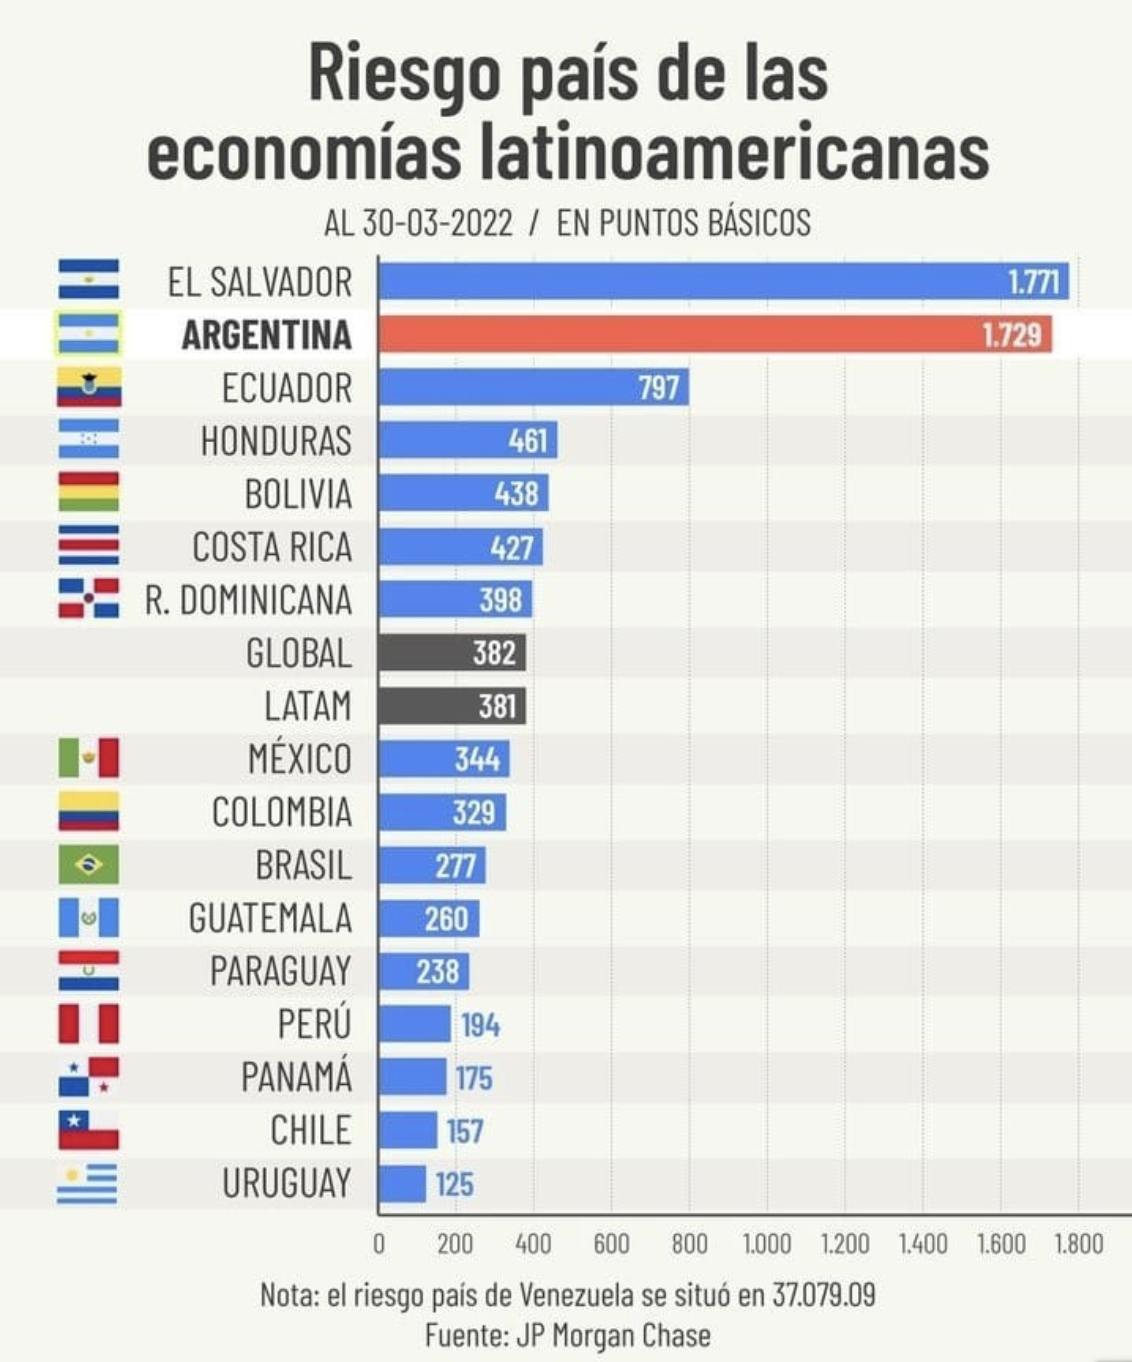 Desde el 30 de marzo de 2022, Uruguay cuenta con 125 puntos básicos, lo que significa que es el país con menor riesgo económico en la región

